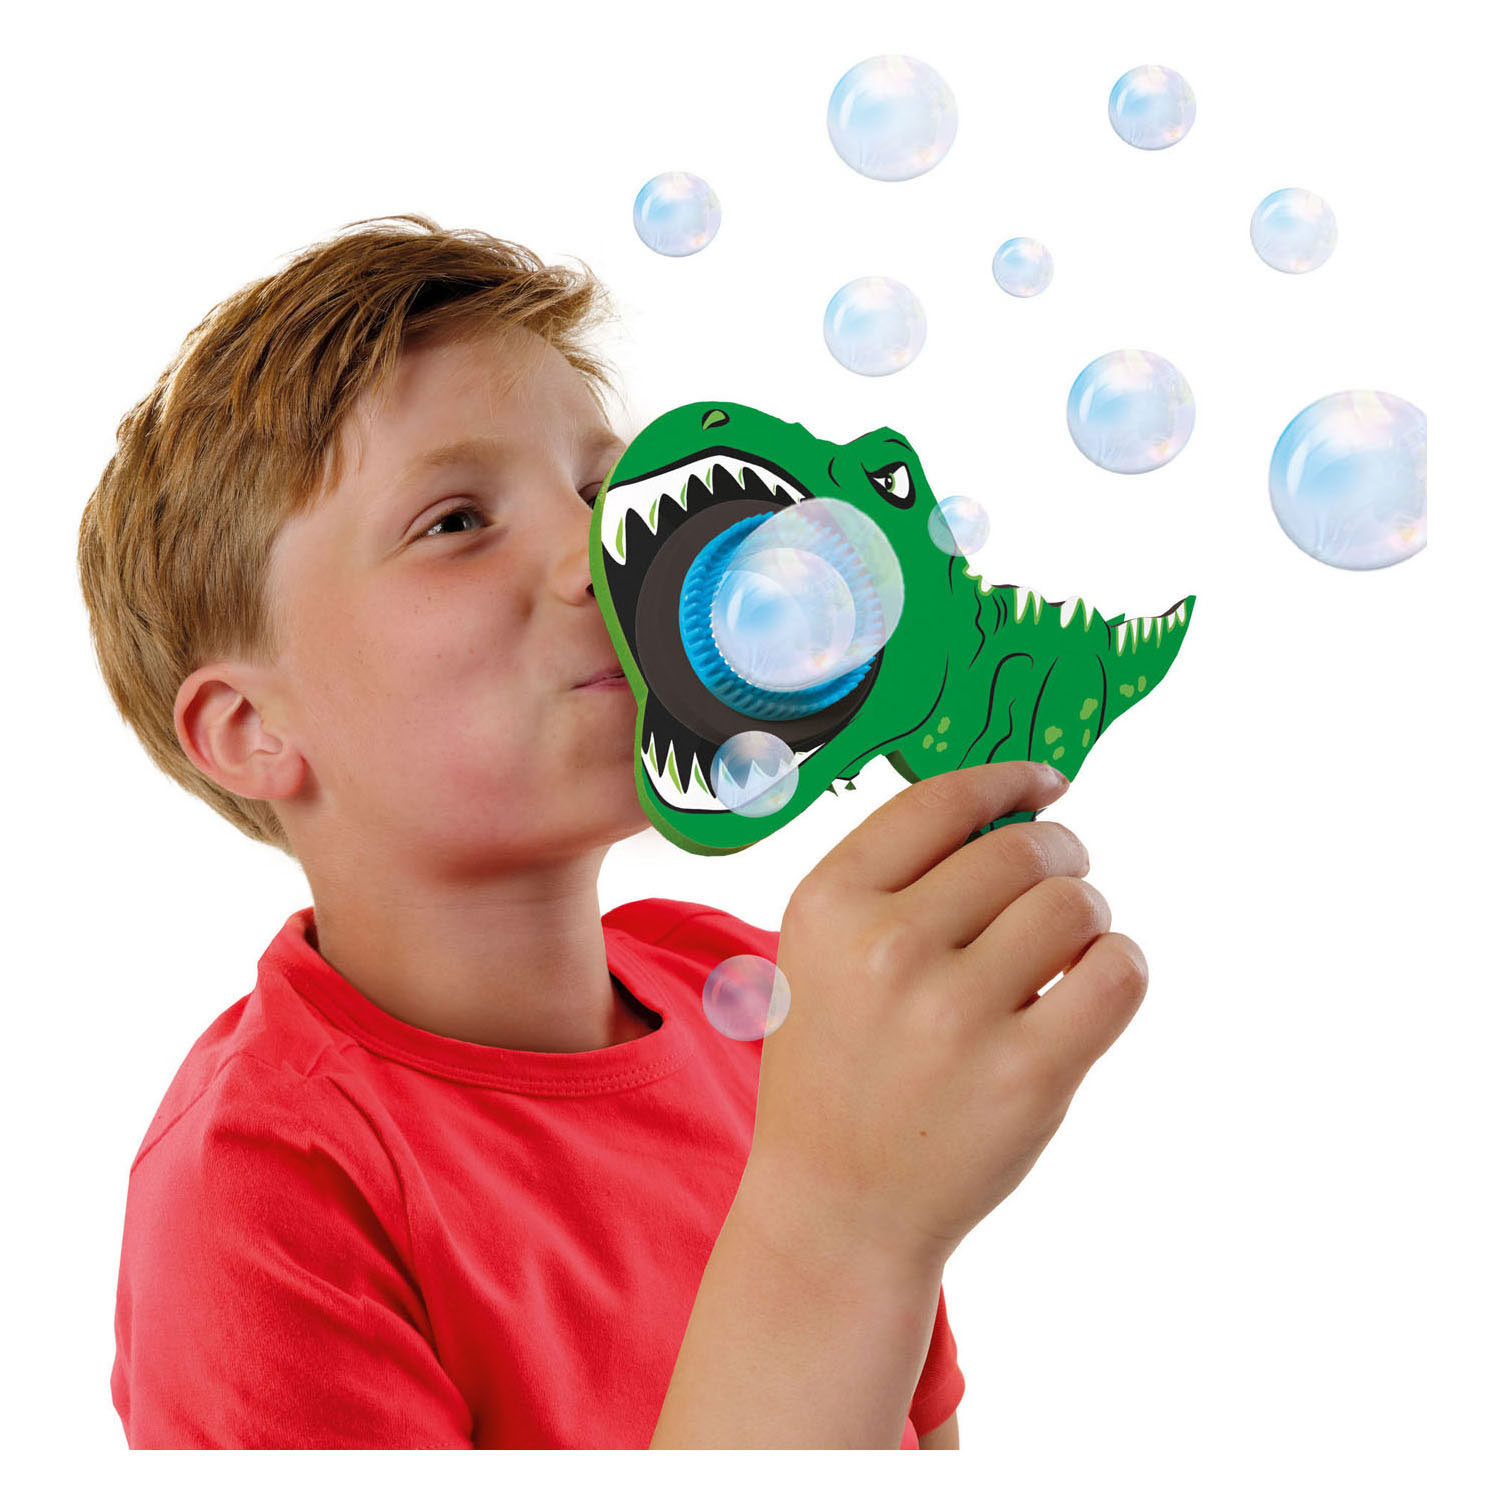 Souffleur de bulles SES Dino Bubbles